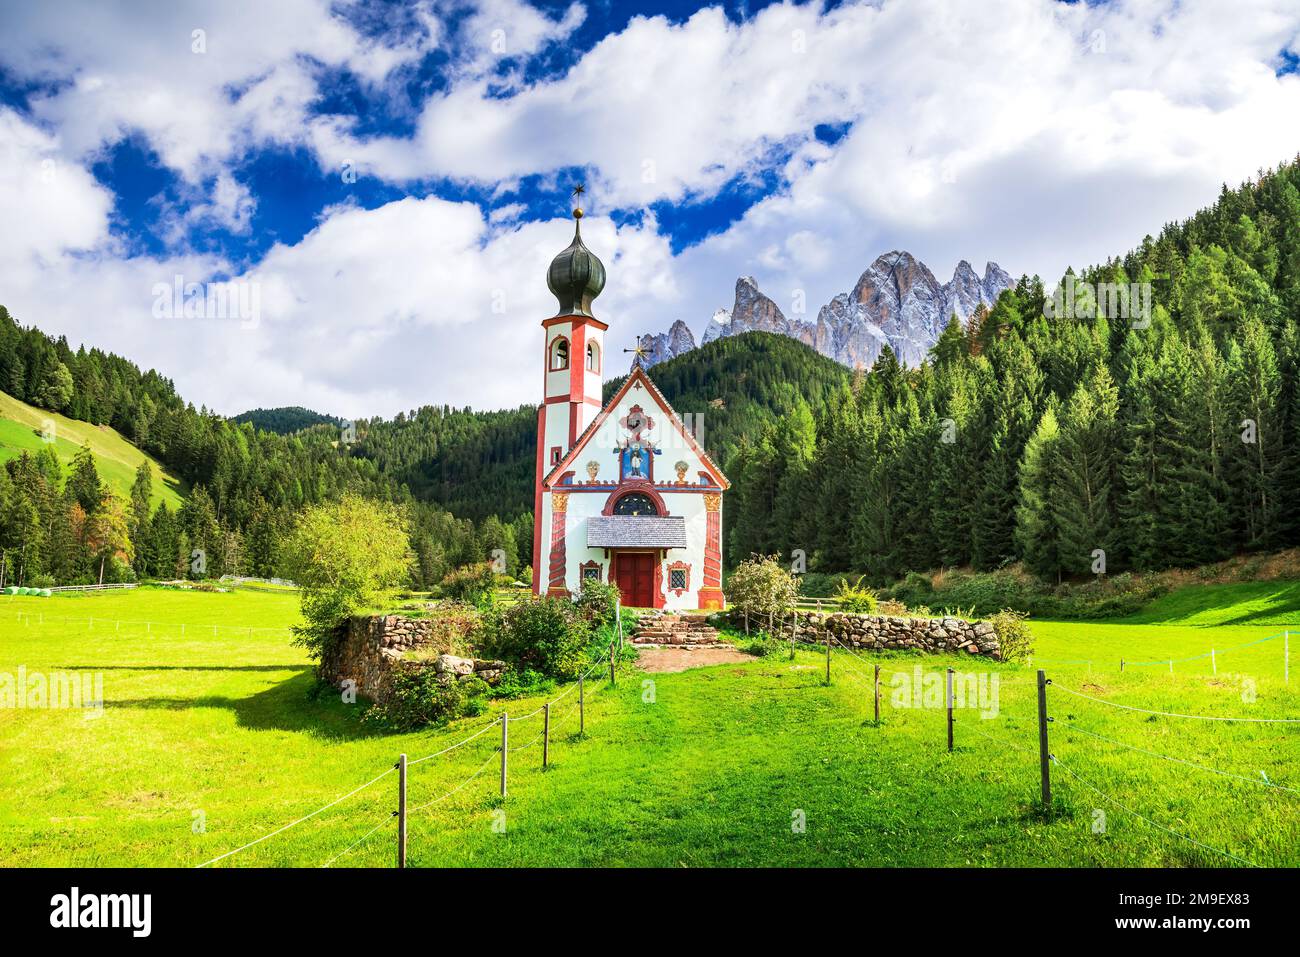 Val di Funes, Italie - belle rue Église John avec montagnes idylliques des Dolomites Odle Ridge dans le Tyrol du Sud. Alpes italiennes, arrière-plan ensoleillé d'une journée. Banque D'Images